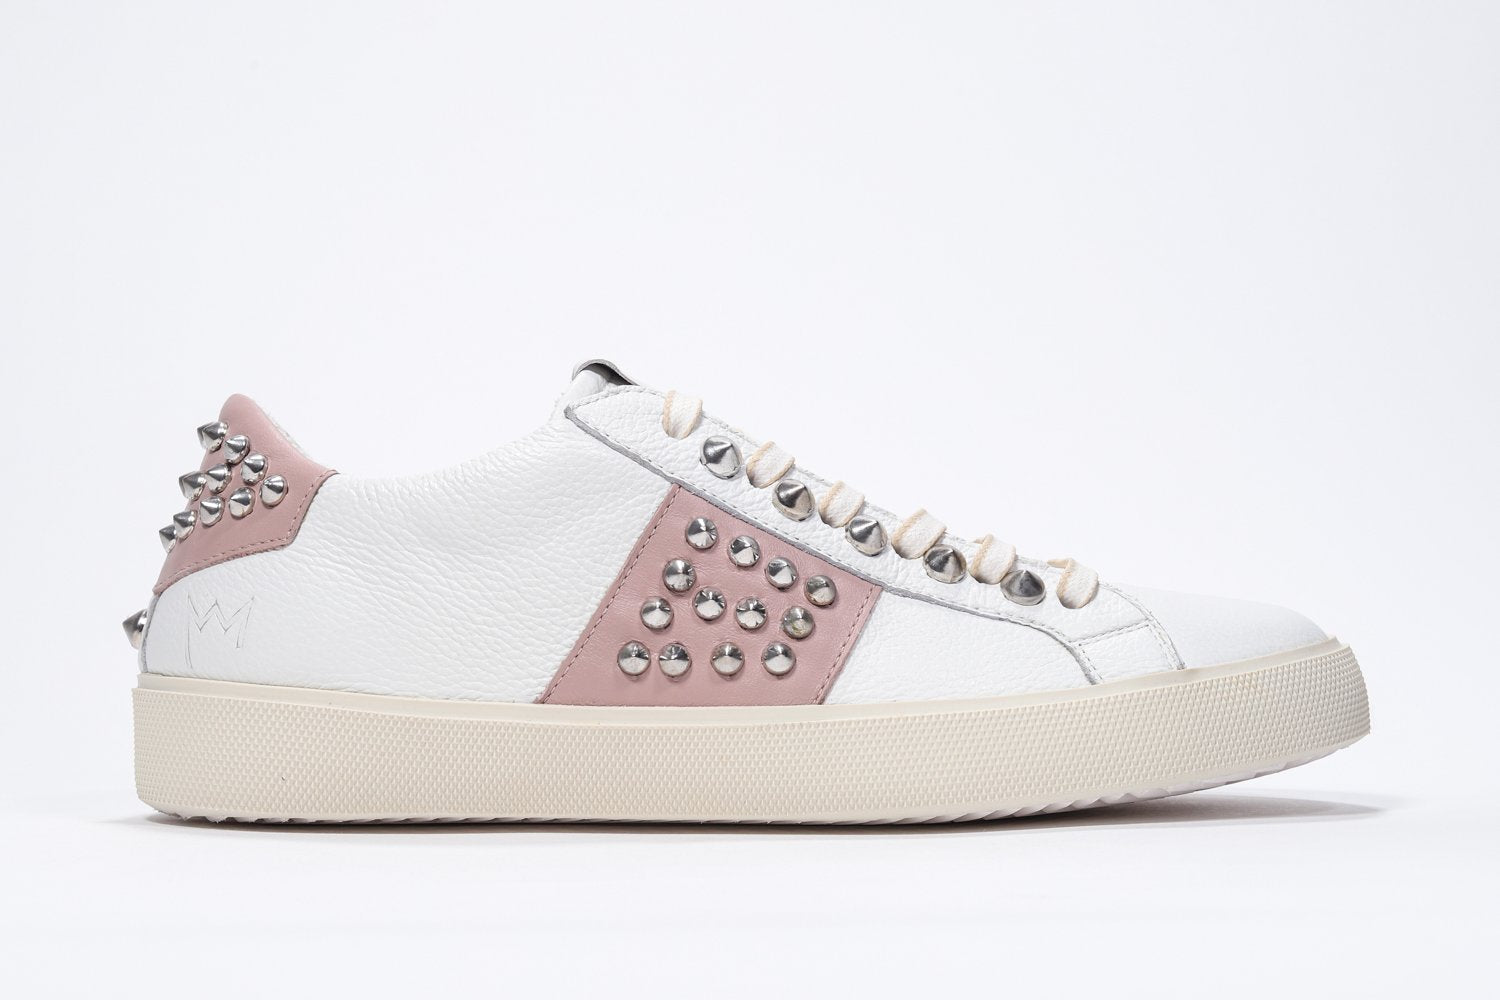 Profil latéral d'un bas blanc et rose pâle sneaker. Tige en cuir avec clous et semelle en caoutchouc vintage.